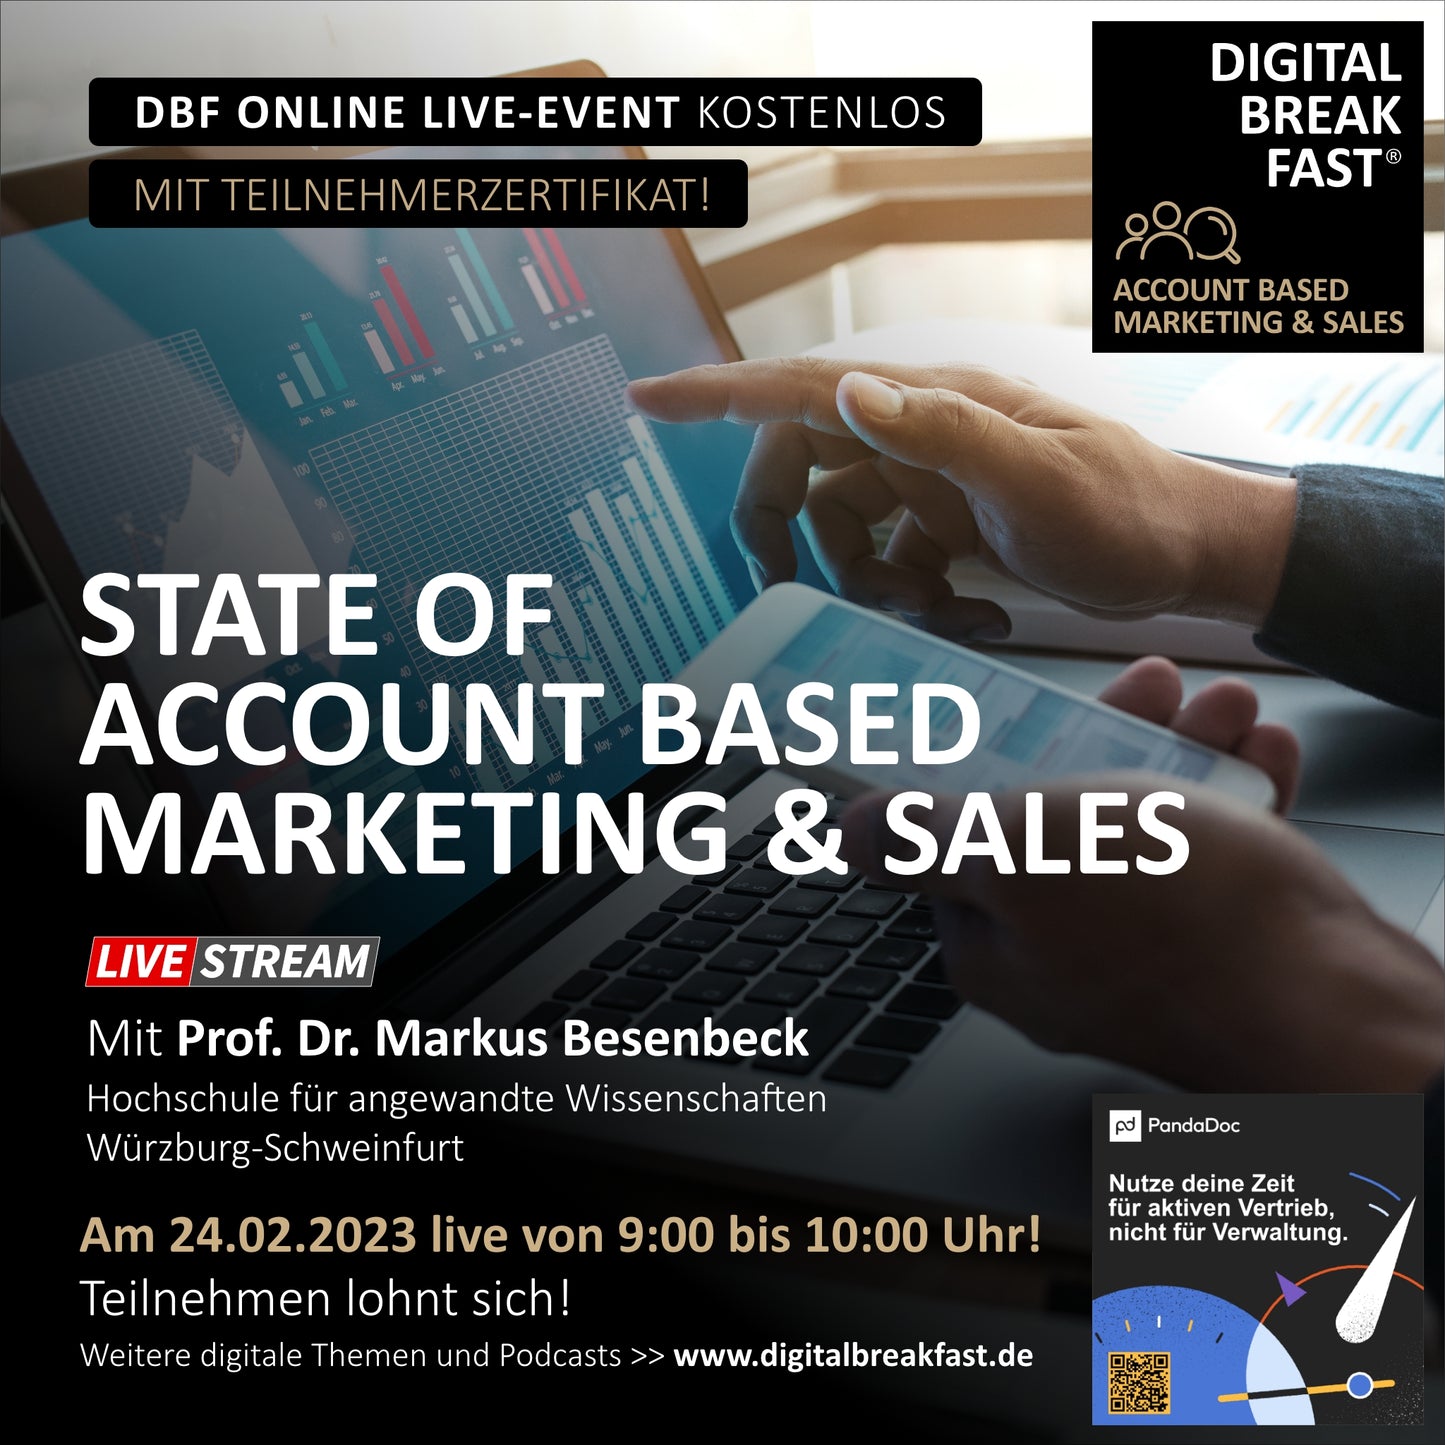 24.02.2023 | "State of Account Based Marketing & Sales“ | Prof. Dr. Markus Besenbeck | Hochschule für angewandte Wissenschaften Würzburg-Schweinfurt